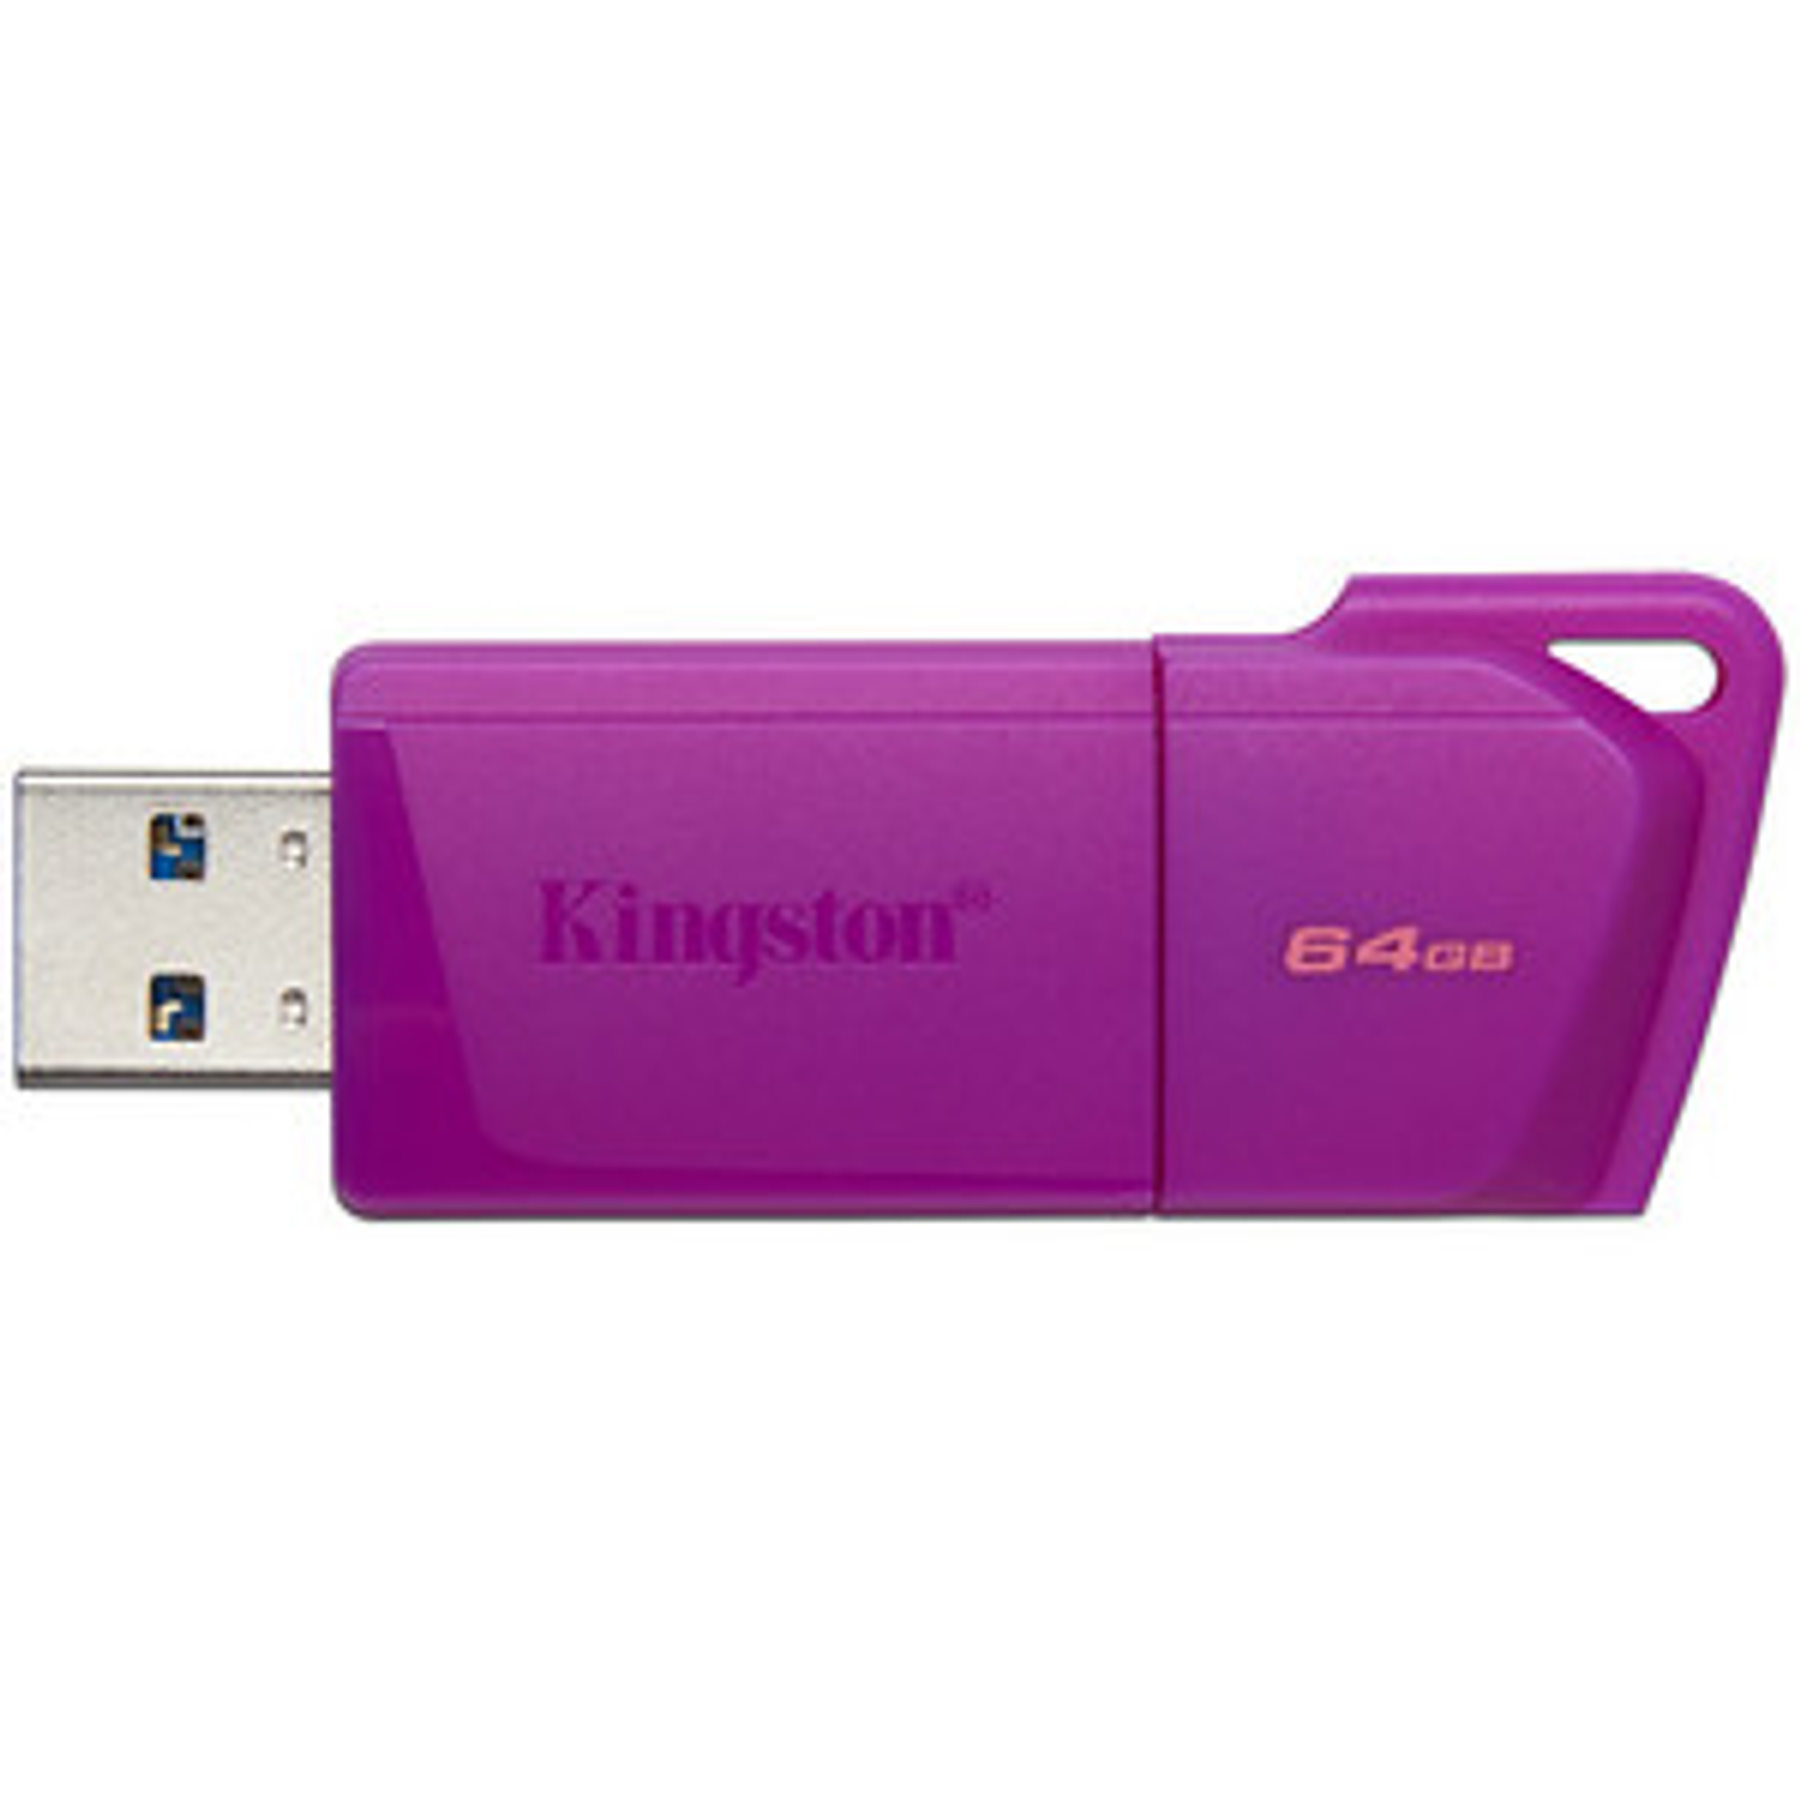 Kingston 64GB Pendrive Exodia color Morado